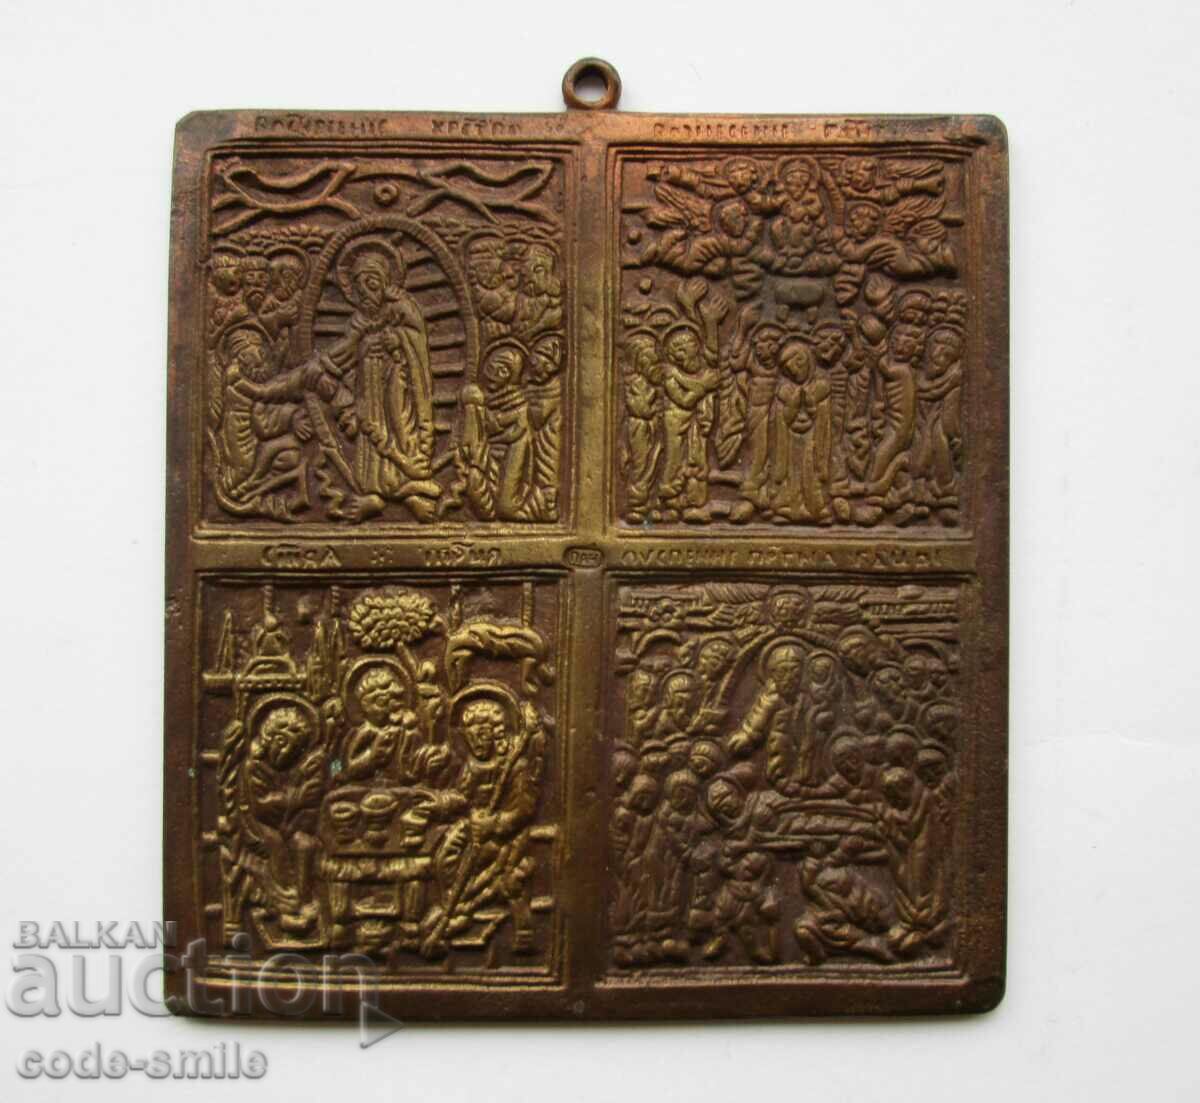 Old author's bronze icon icon with 4 religious scenes